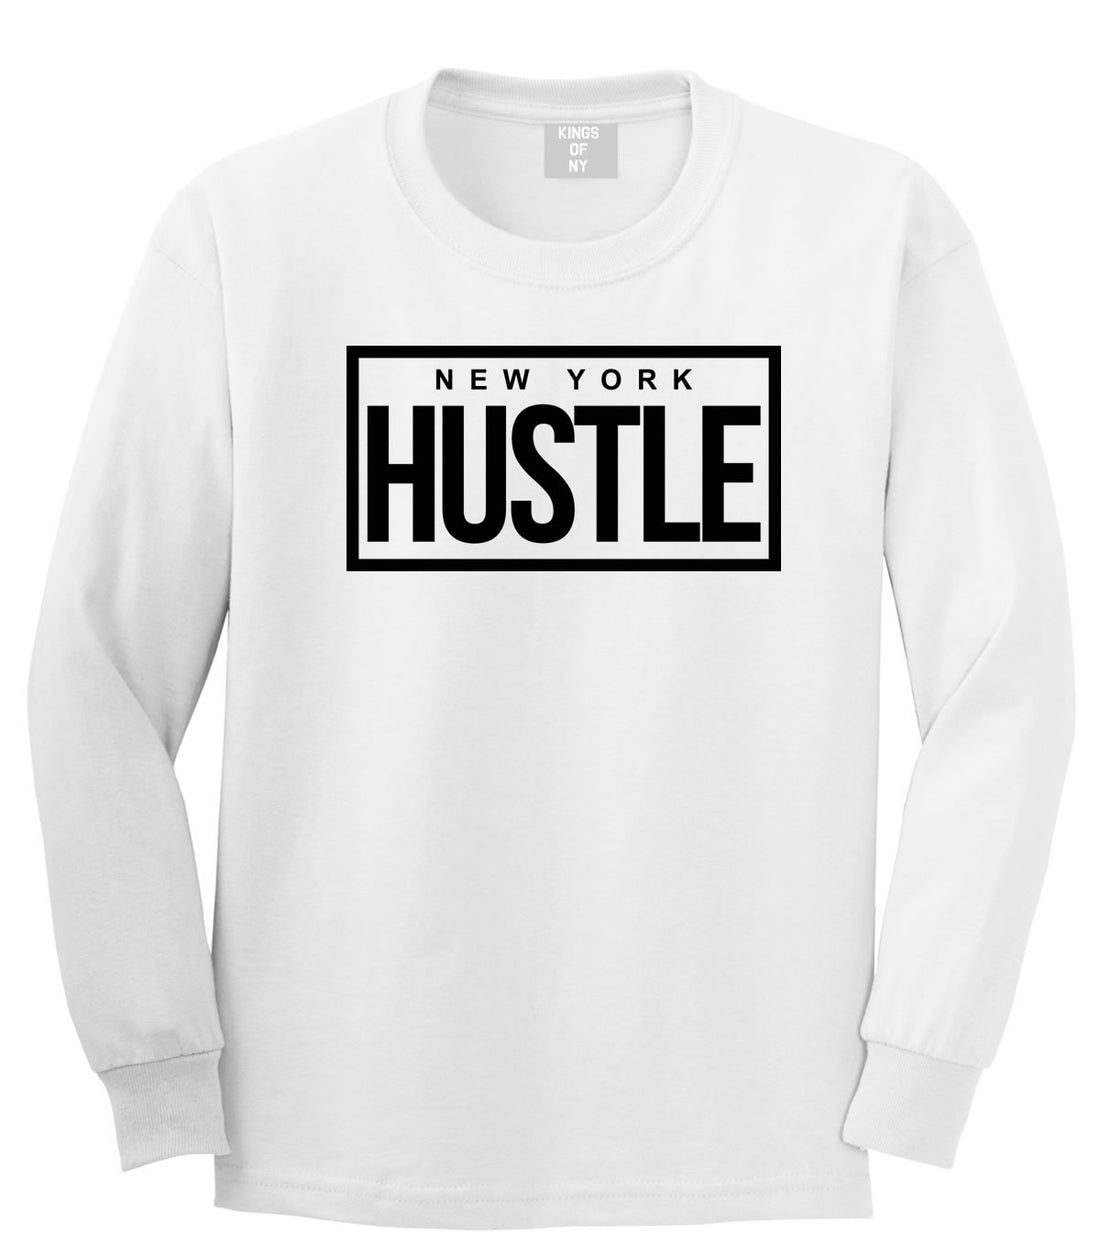 Kings Of NY Everyday Hustle T-Shirt – KINGS OF NY